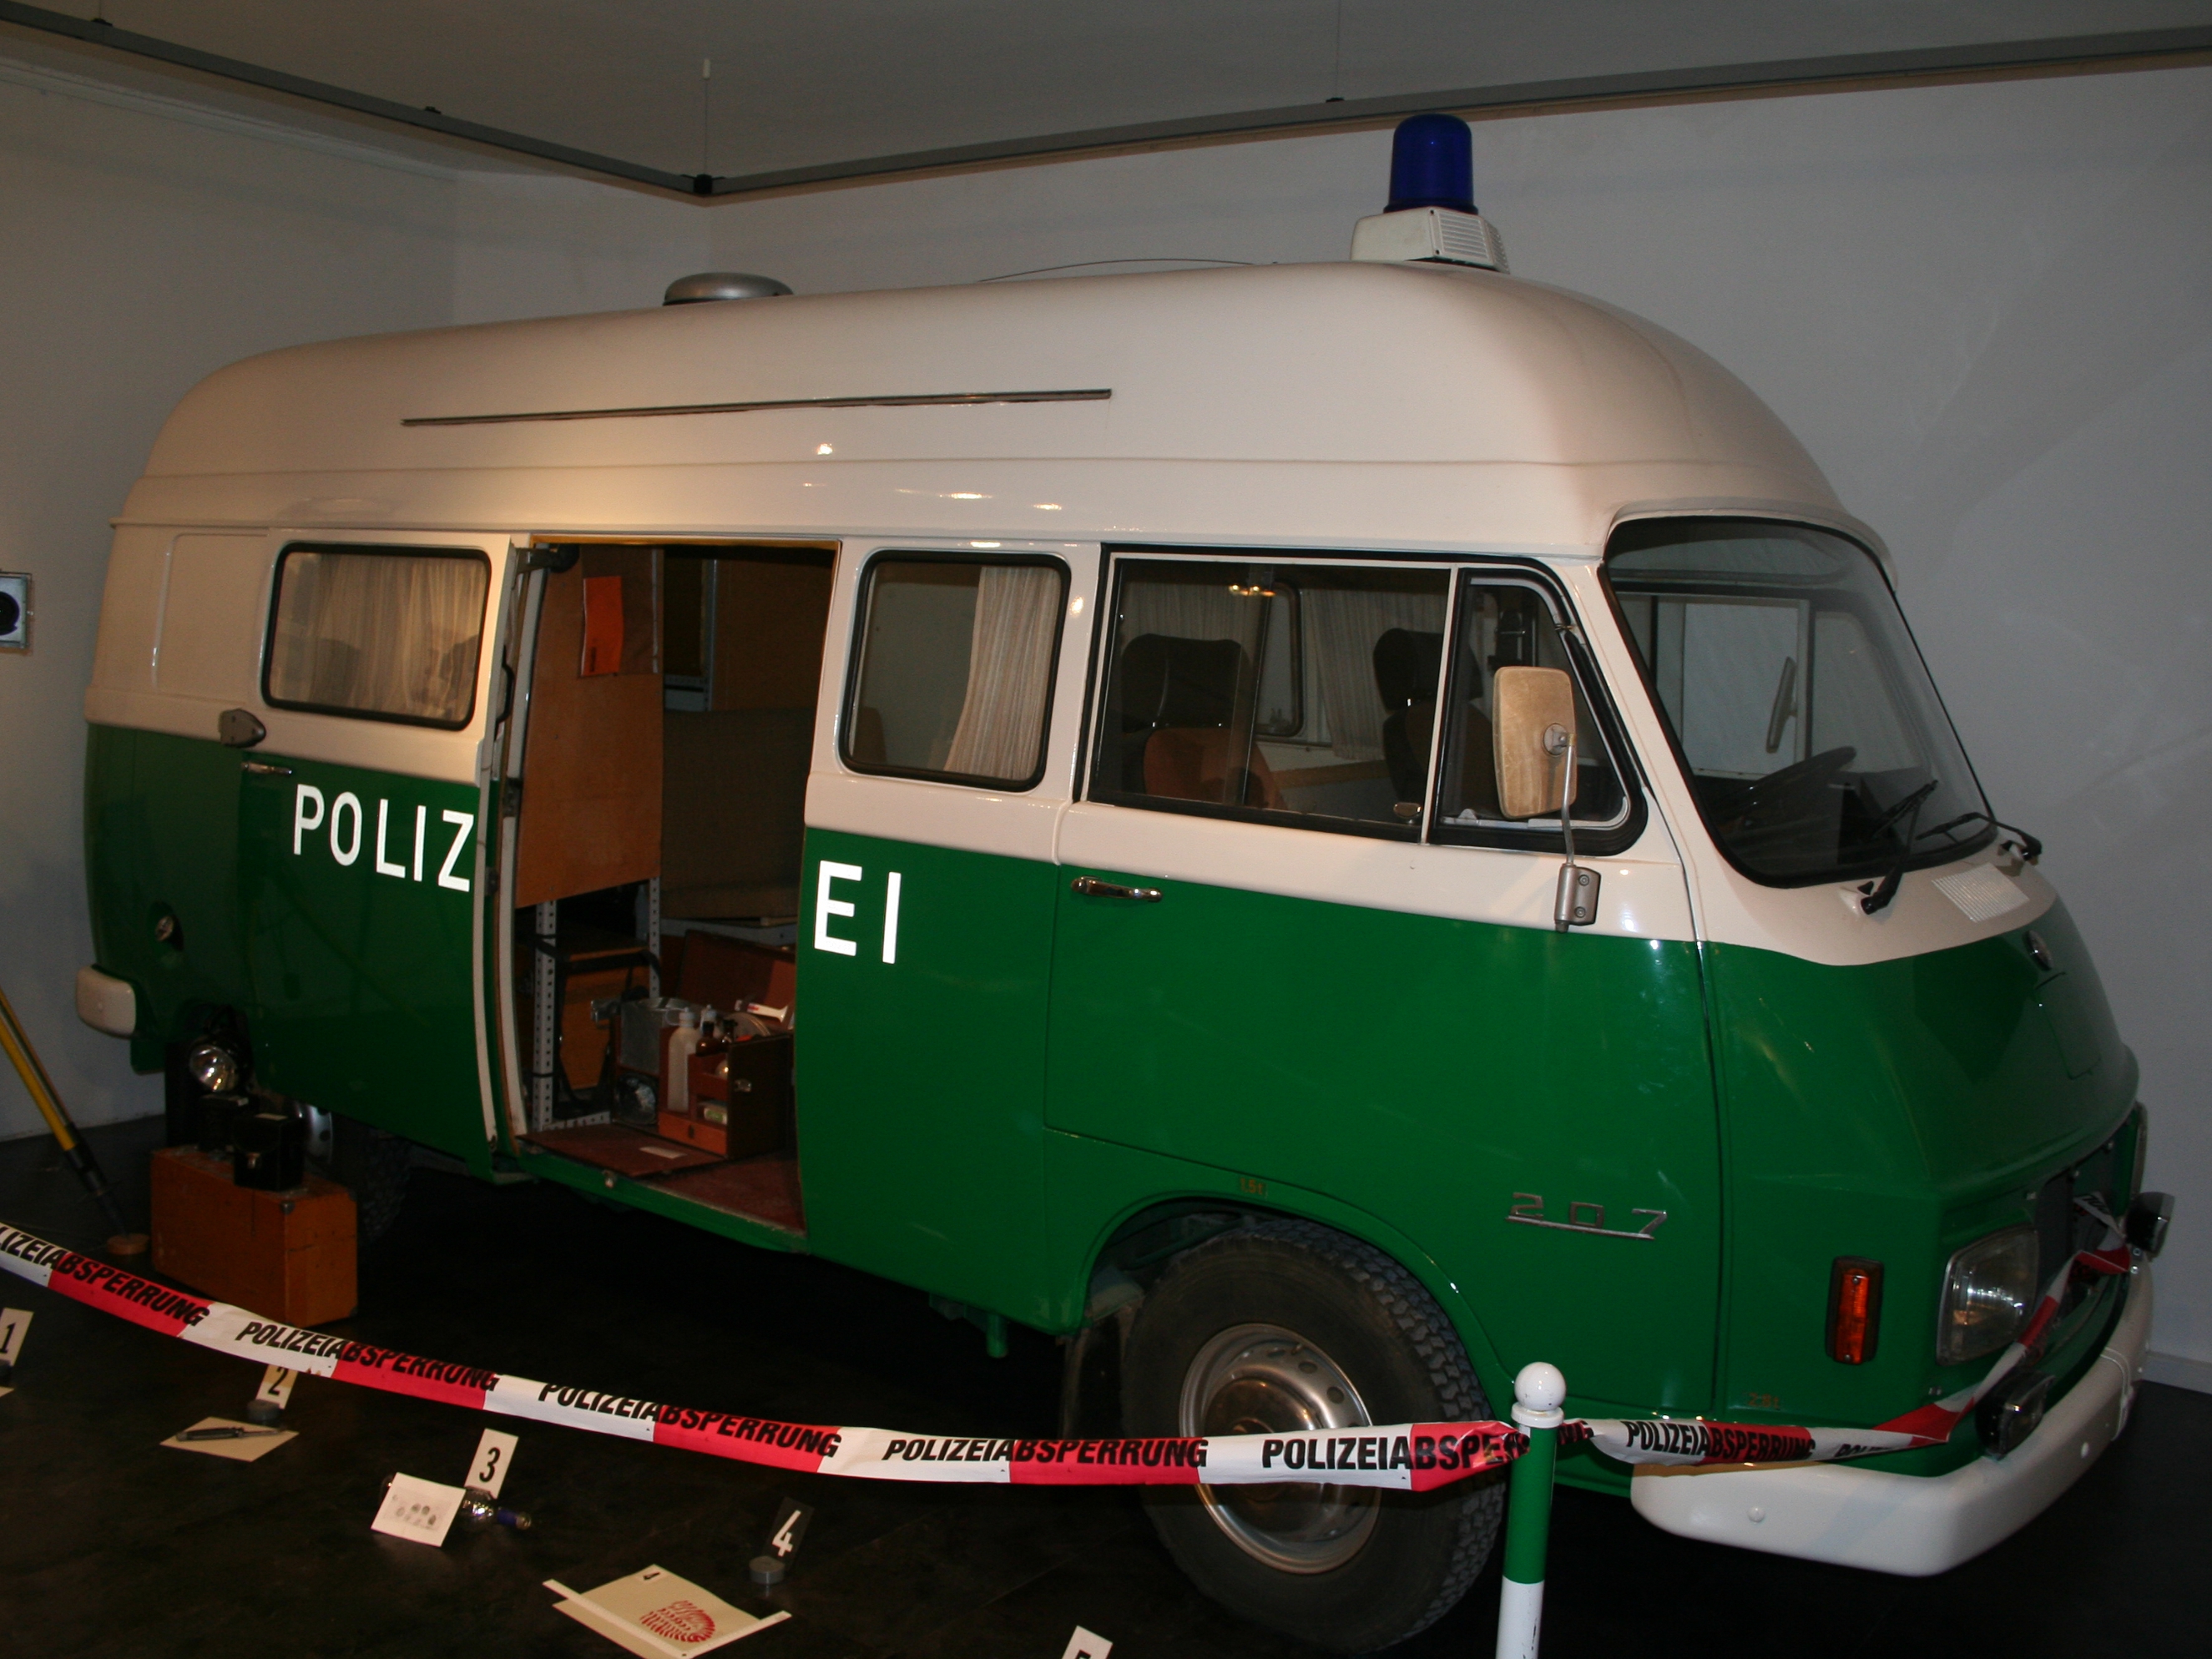 Polizeibus im Polizeimuseum